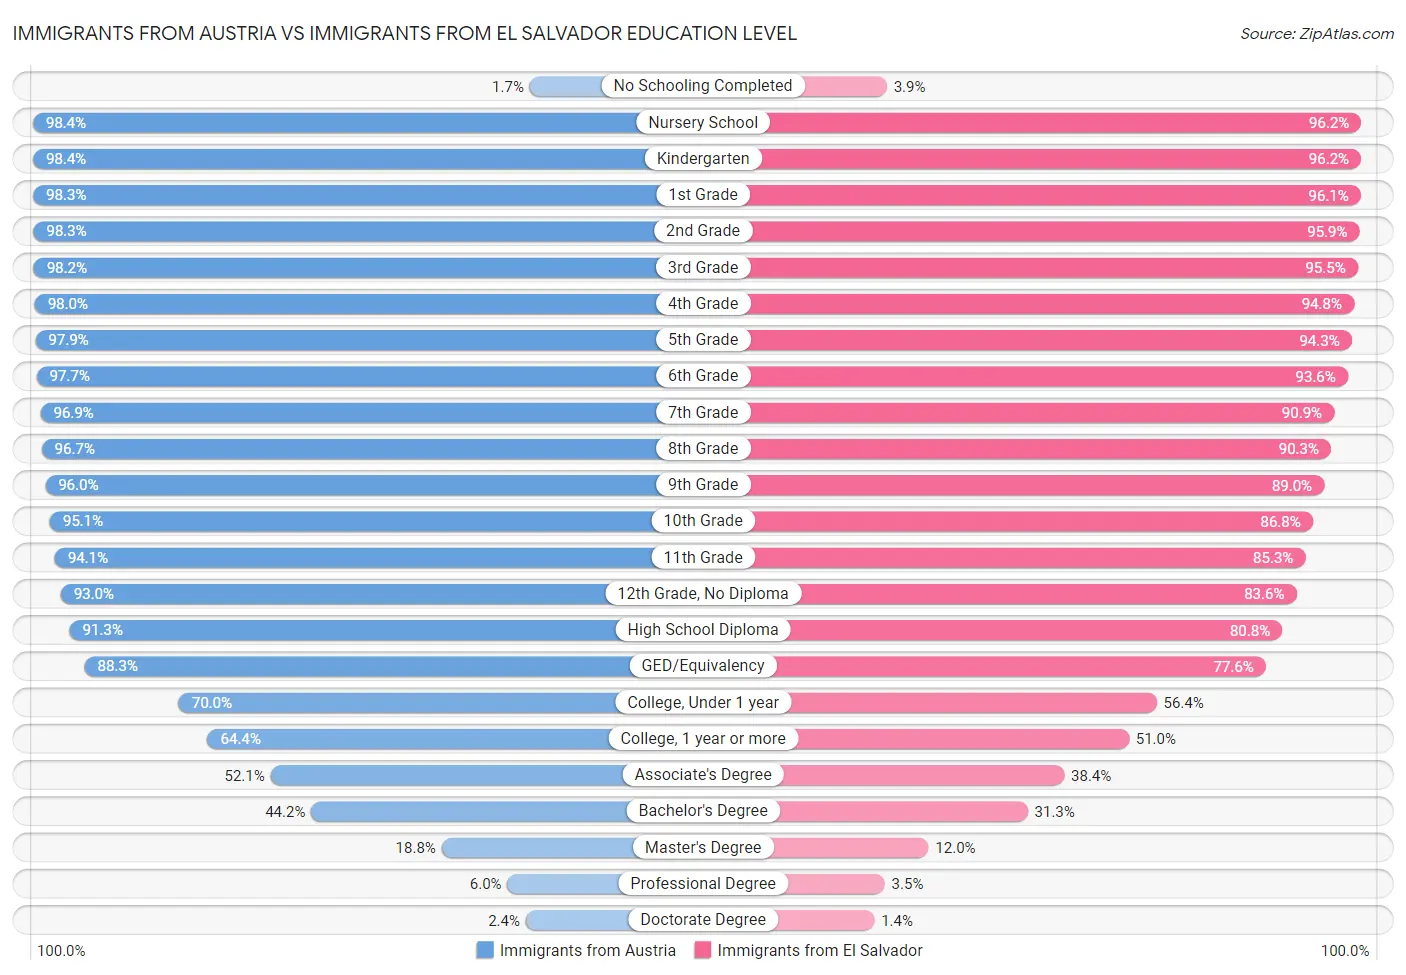 Immigrants from Austria vs Immigrants from El Salvador Education Level